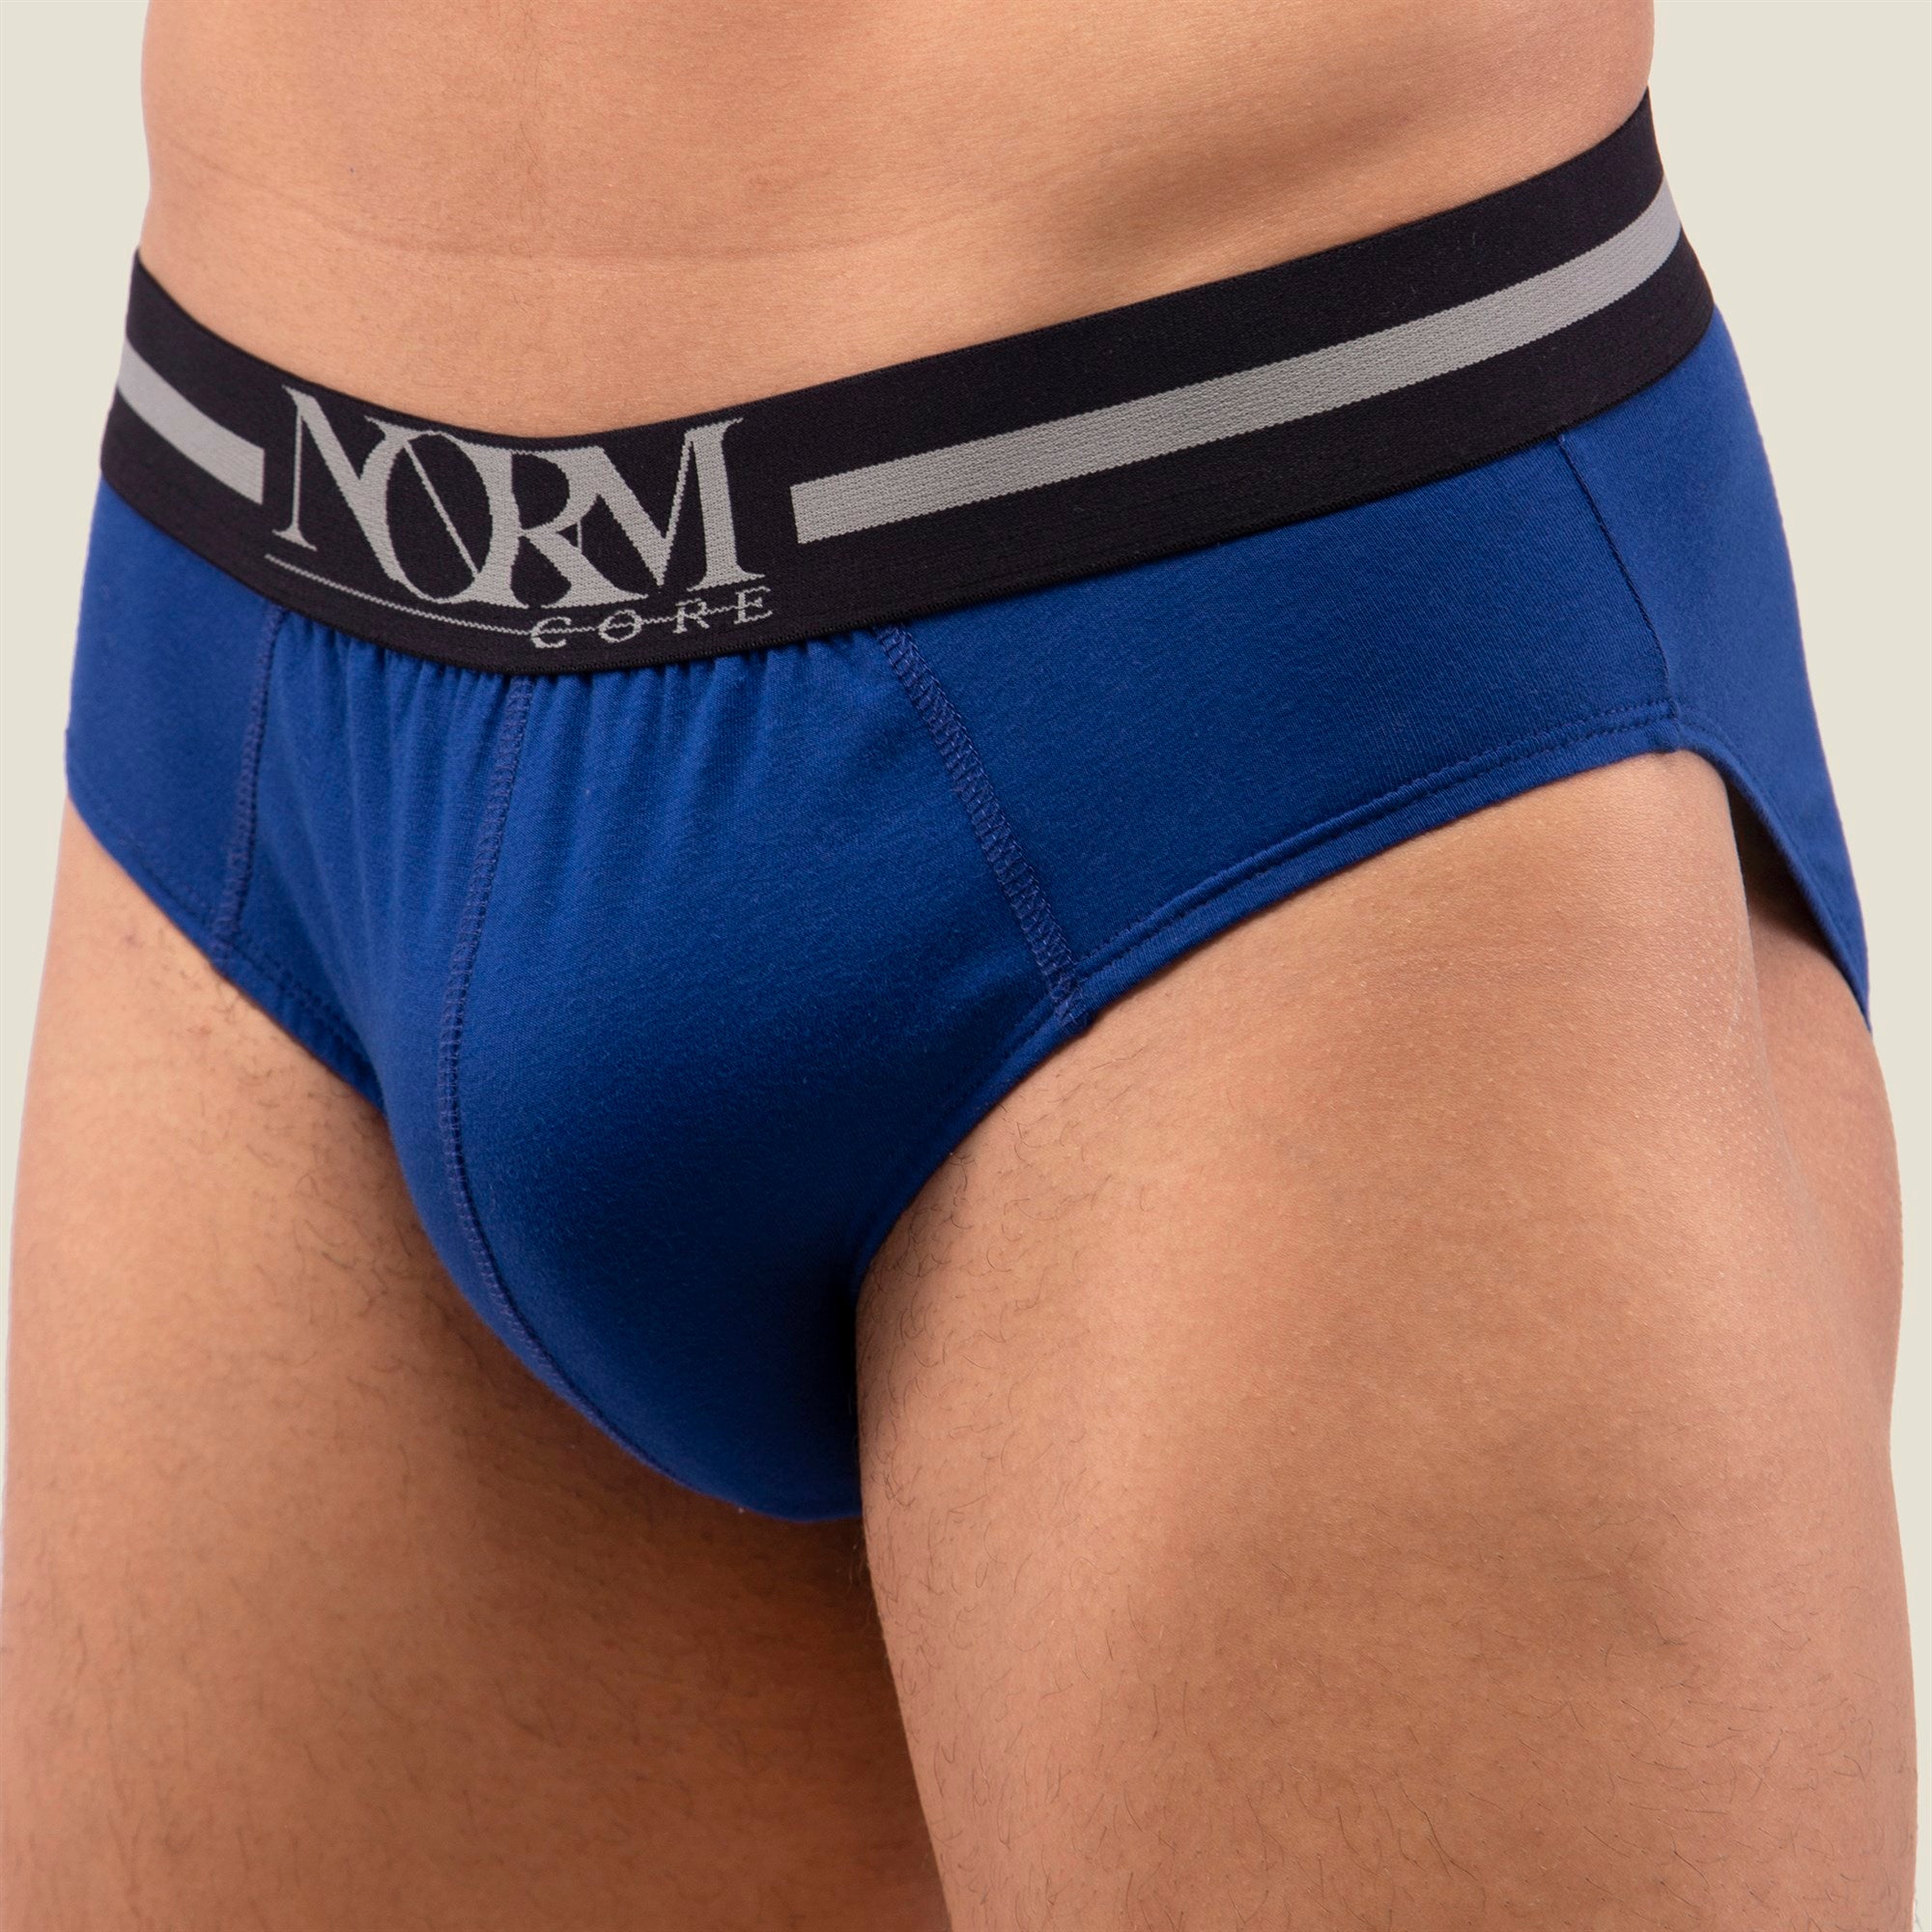 Normcore Cotton Innerwear - Blue Brief with Black Waistband Underwear